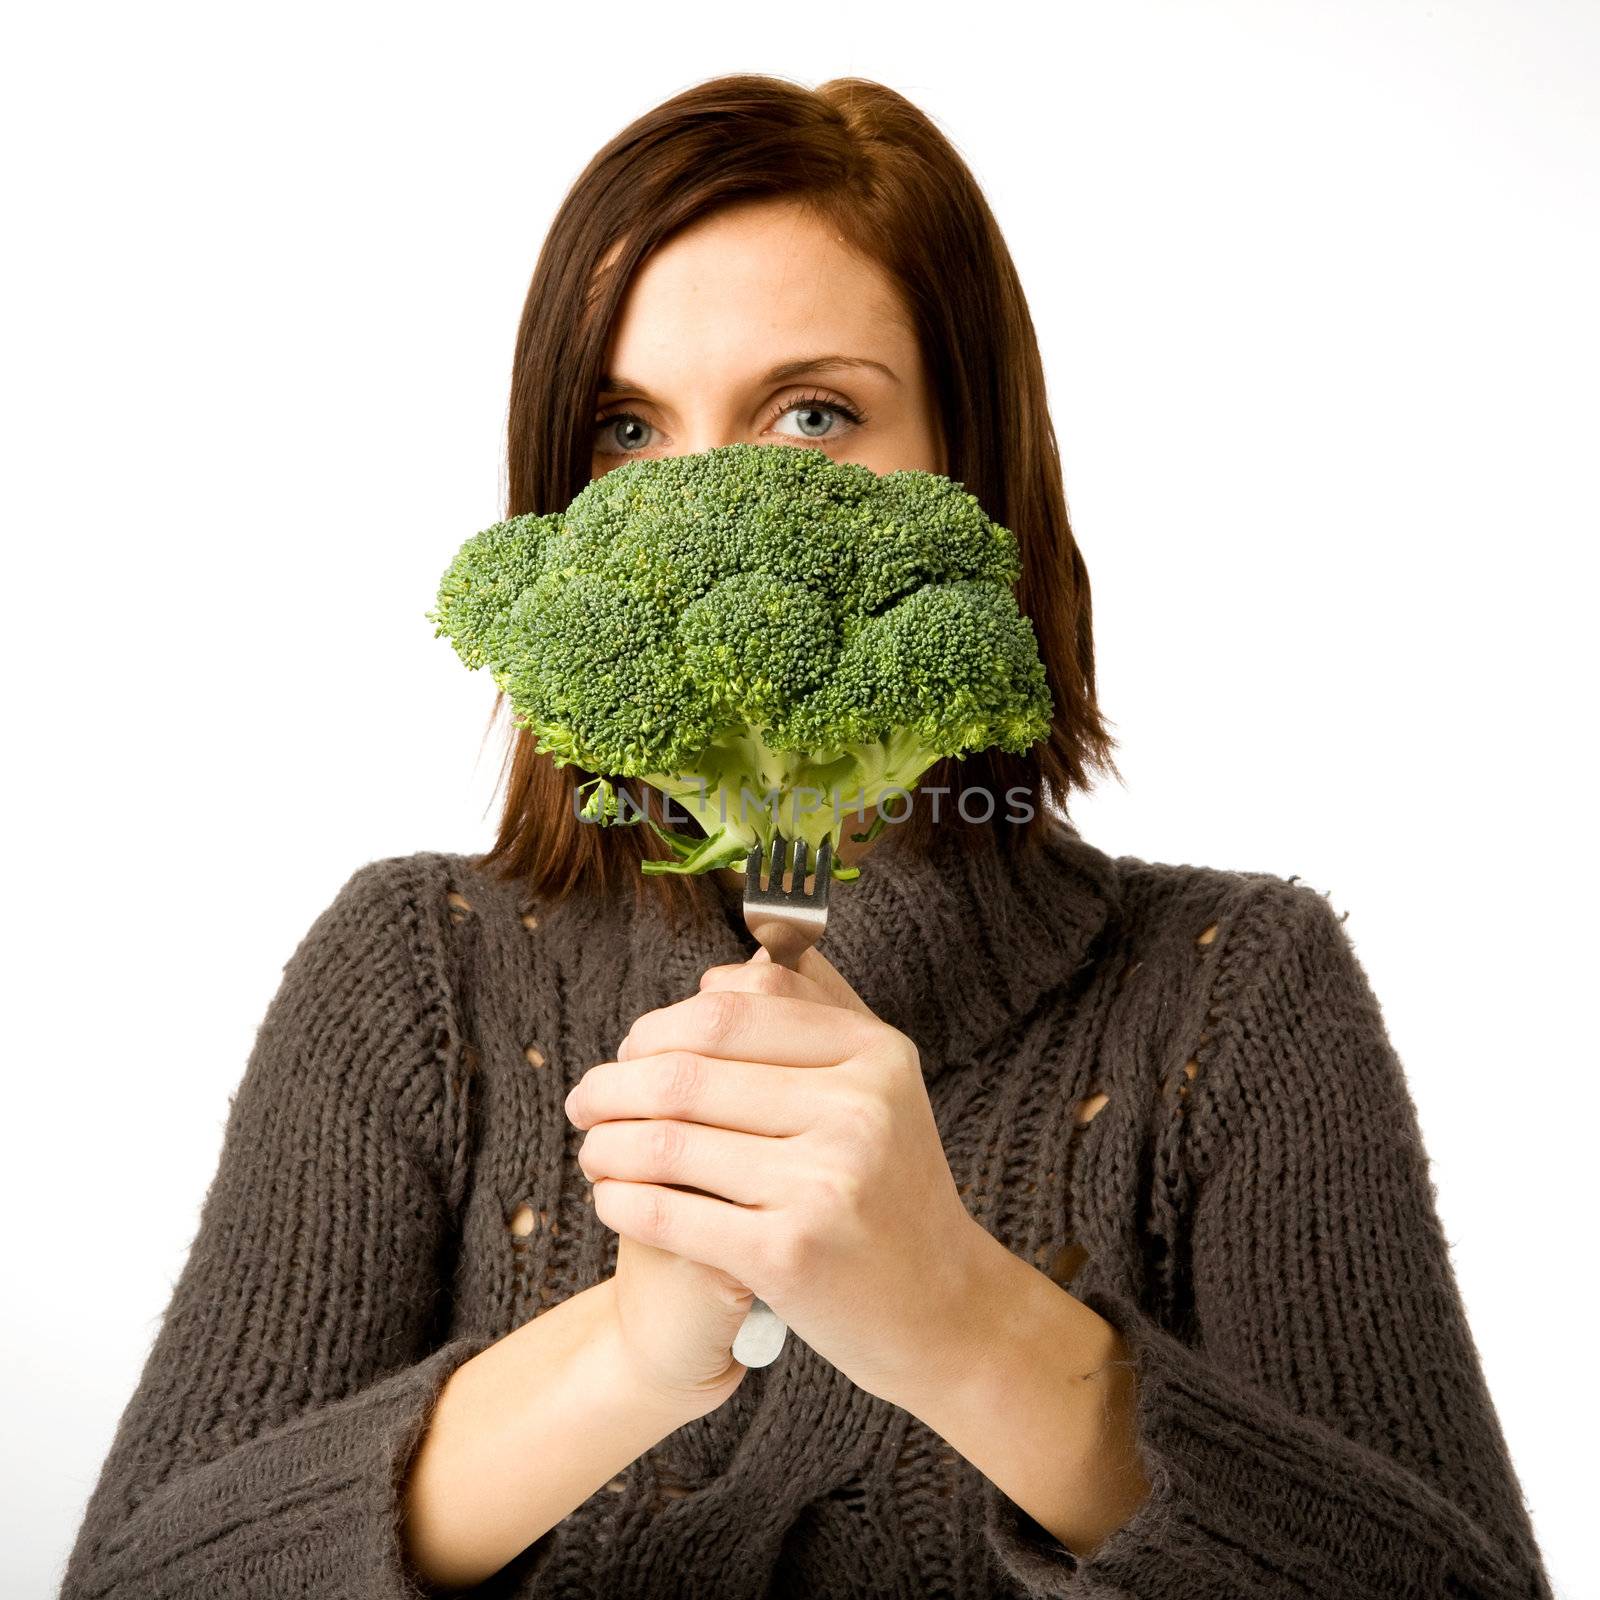 Broccoli by leaf